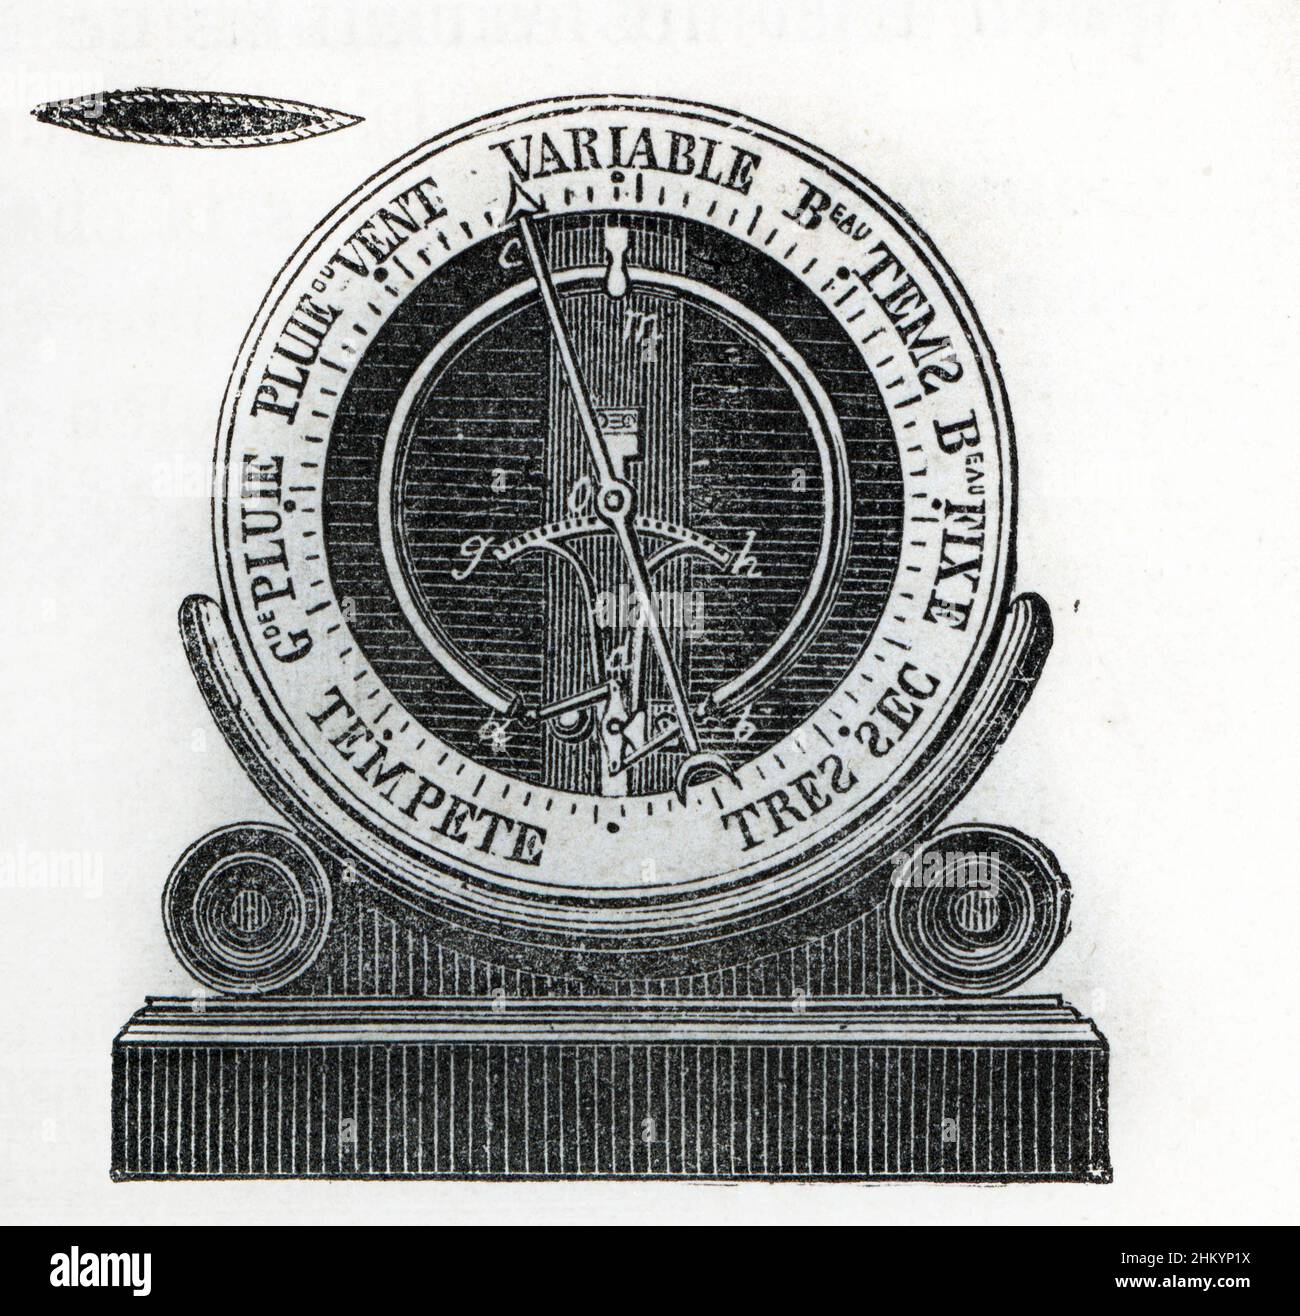 Representation d'un barometre aneroide d'Eugene Bourdon 1849 (Aneroid barometer of Bourdon) Gravure de la fin du 19eme siecle Collection privee Stock Photo